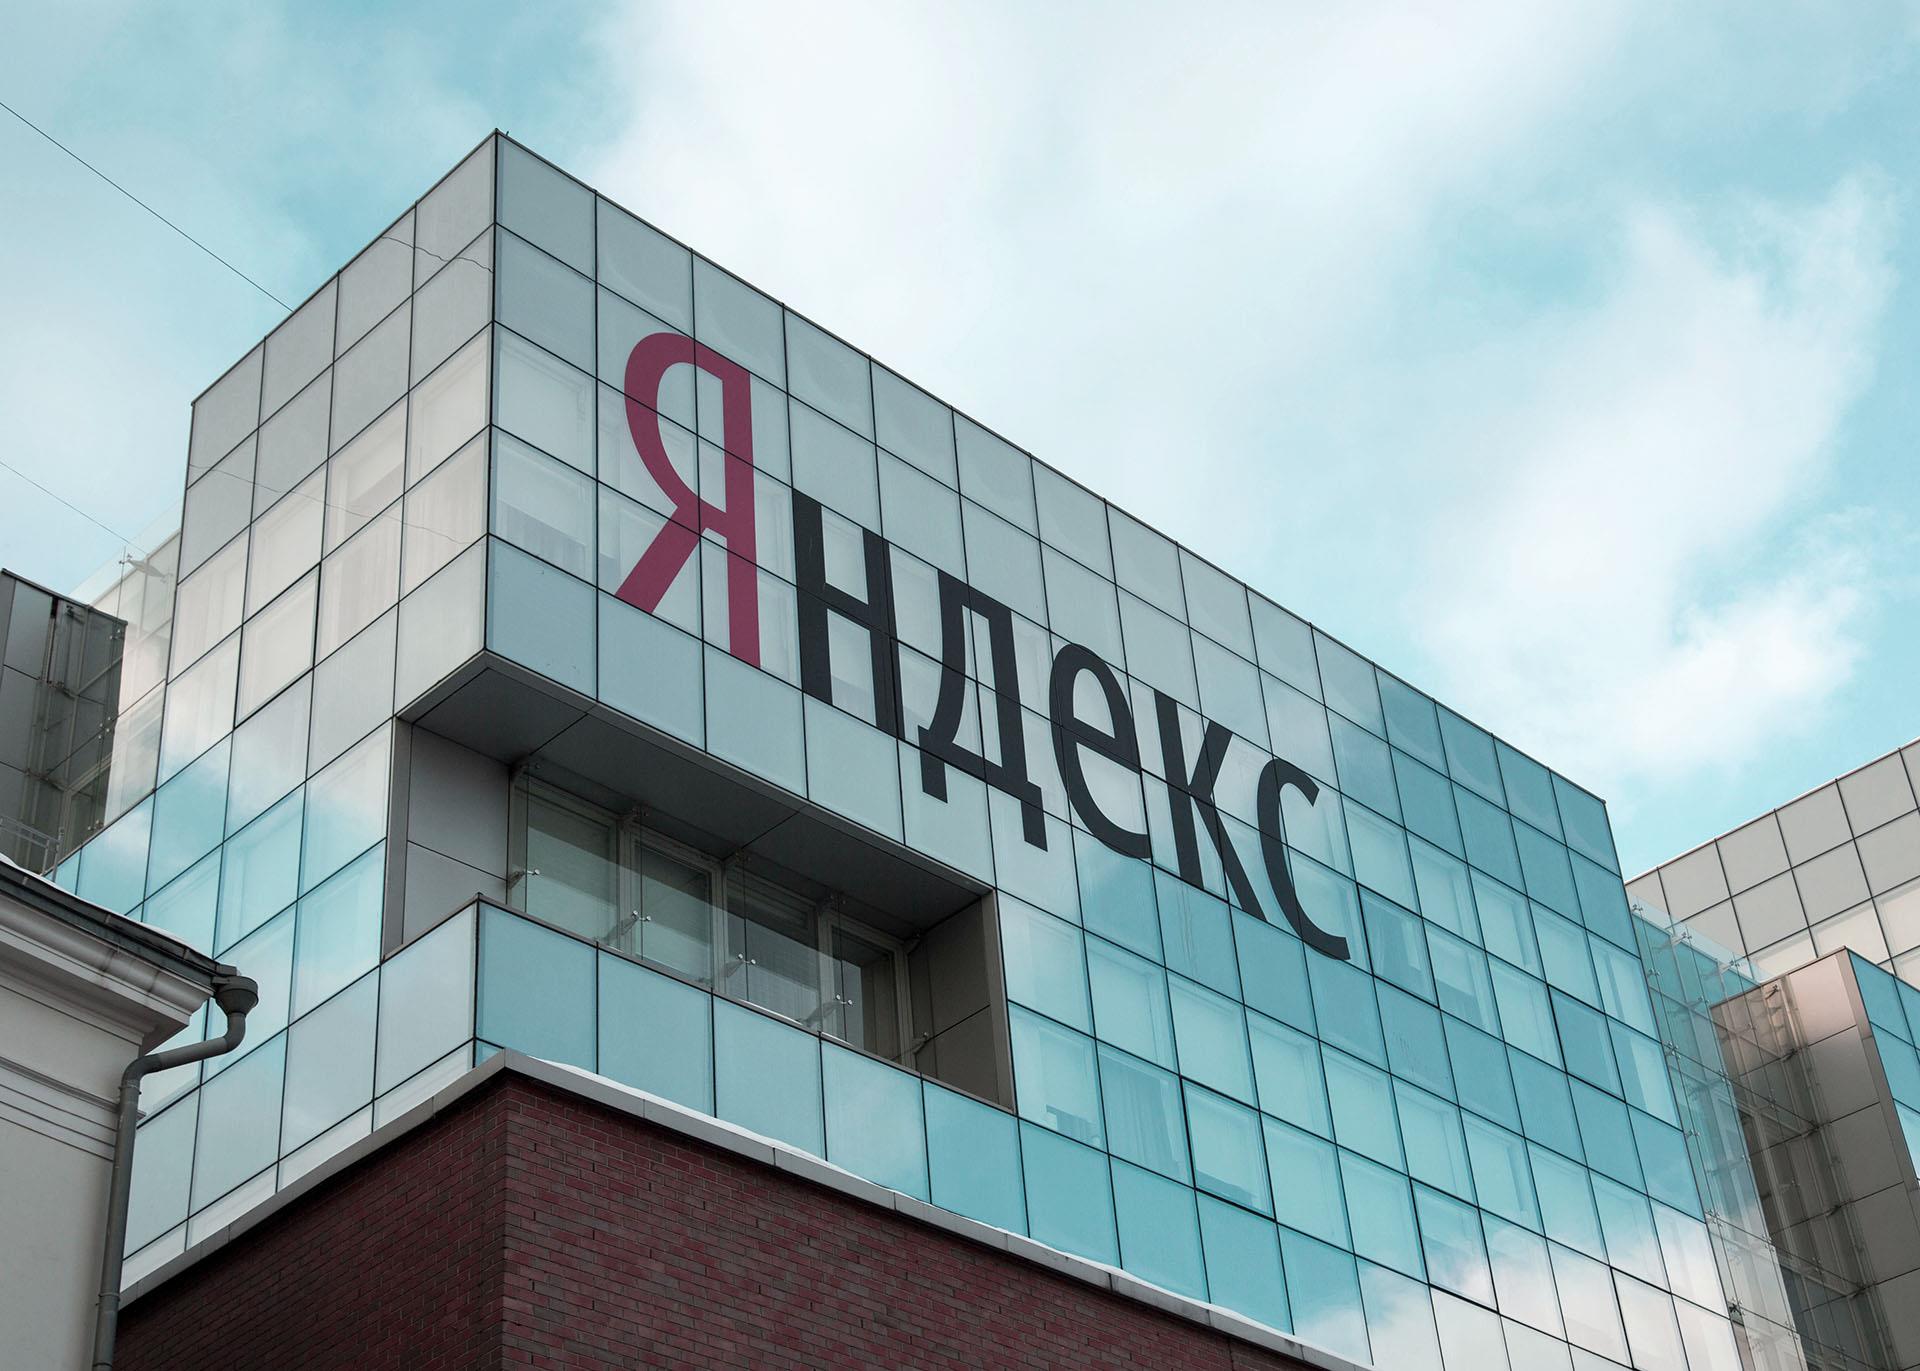 МКПАО «Яндекс» получила листинг на Московской бирже